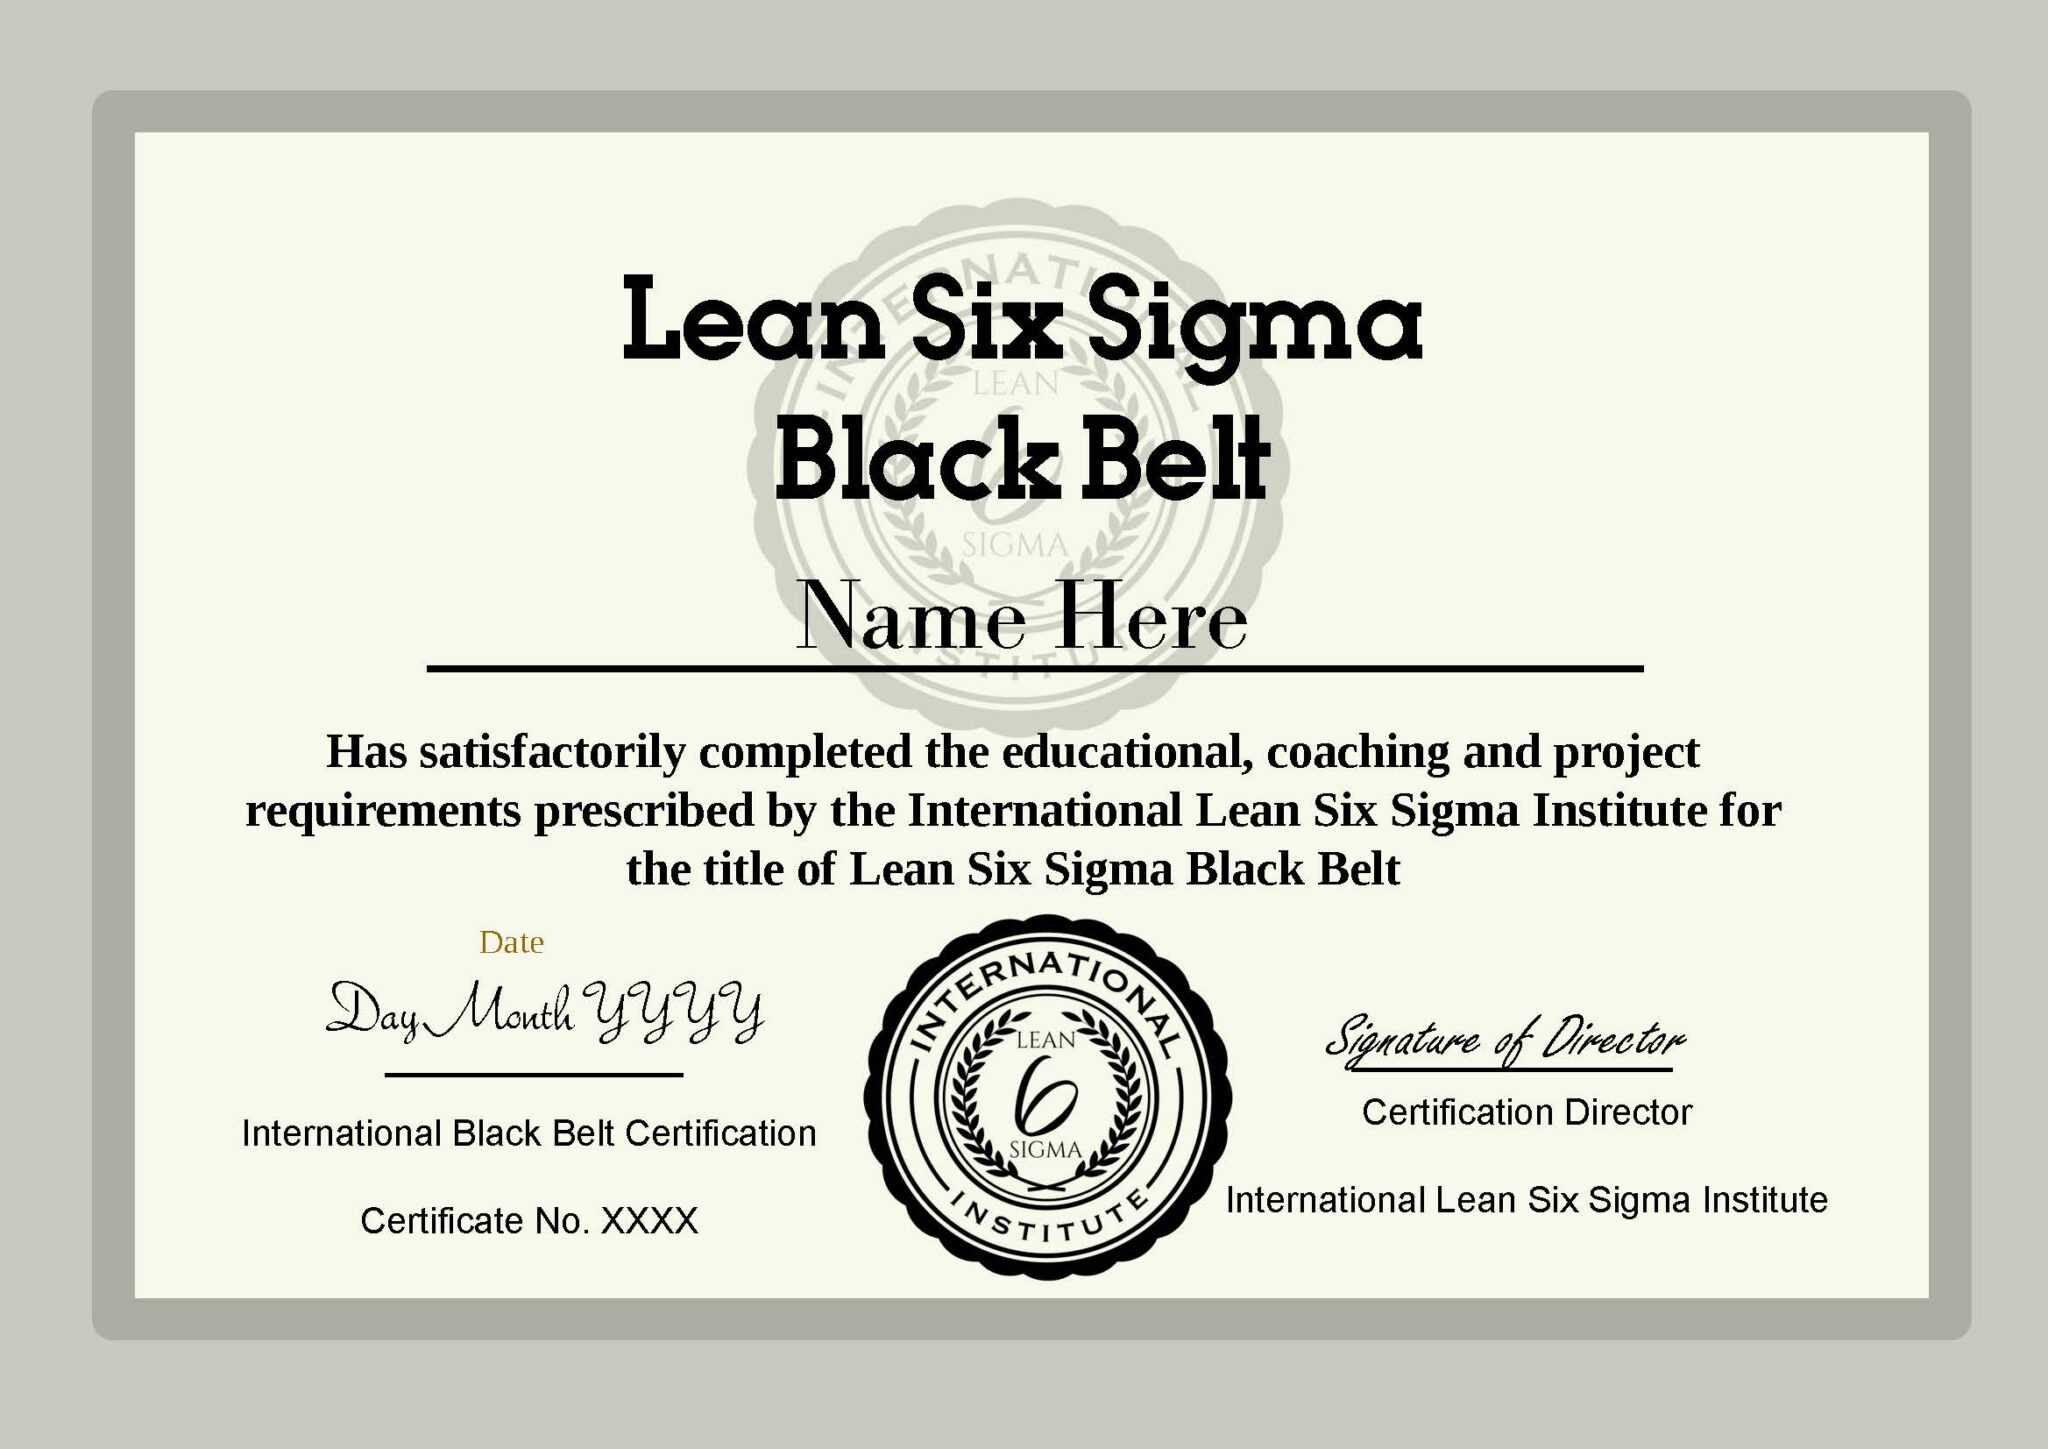 ilssi-black-belt-cert-template-2019-throughout-green-belt-certificate